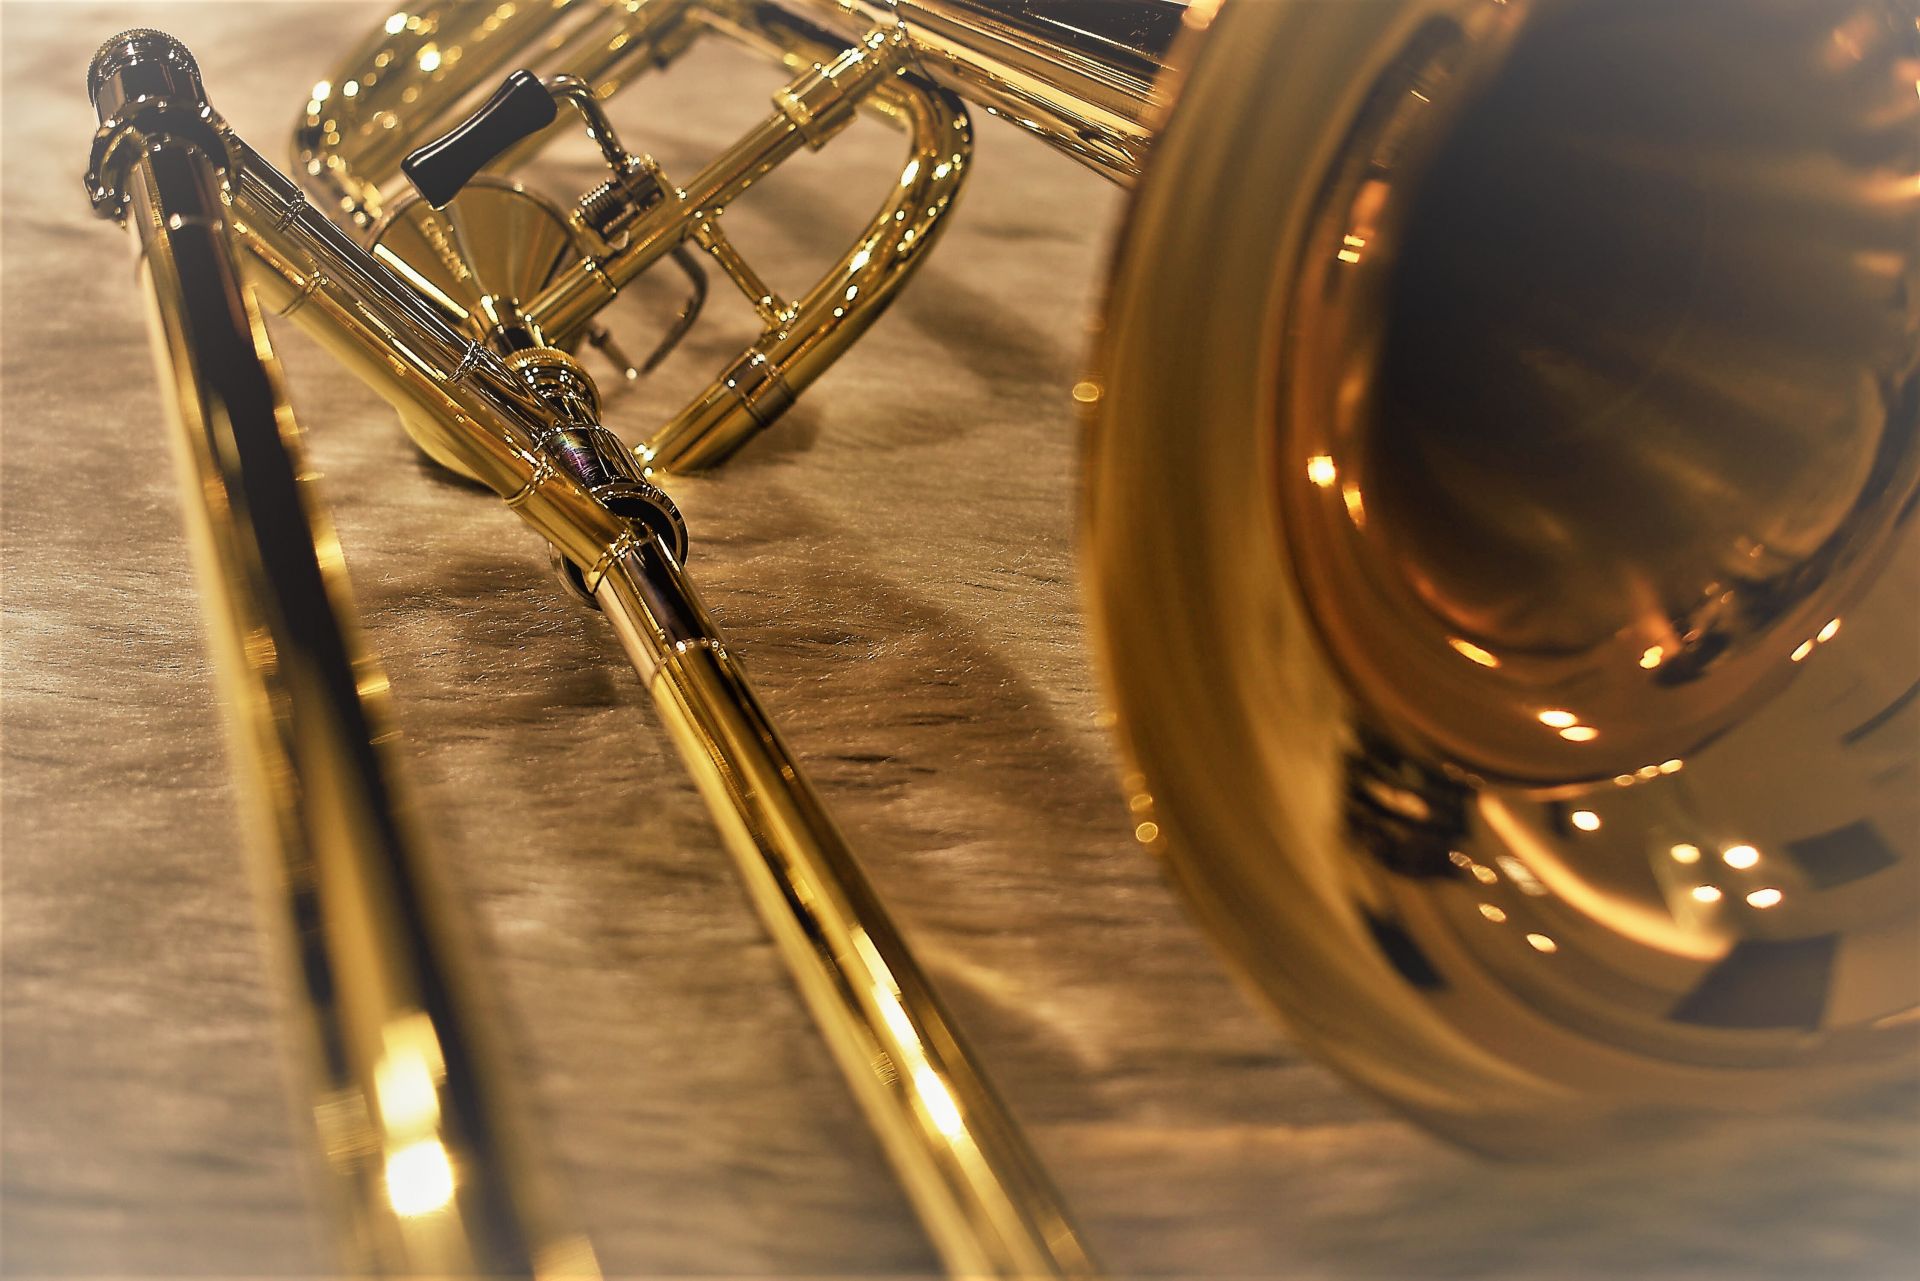 **トロンボーン ***ヤマハ [https://jp.yamaha.com/products/musical_instruments/winds/trombones/index.html::title=] 豊富なラインナップで初心者からプロフェッショナルまで、様々な奏者に人気のヤマハ。]]クセのな […]